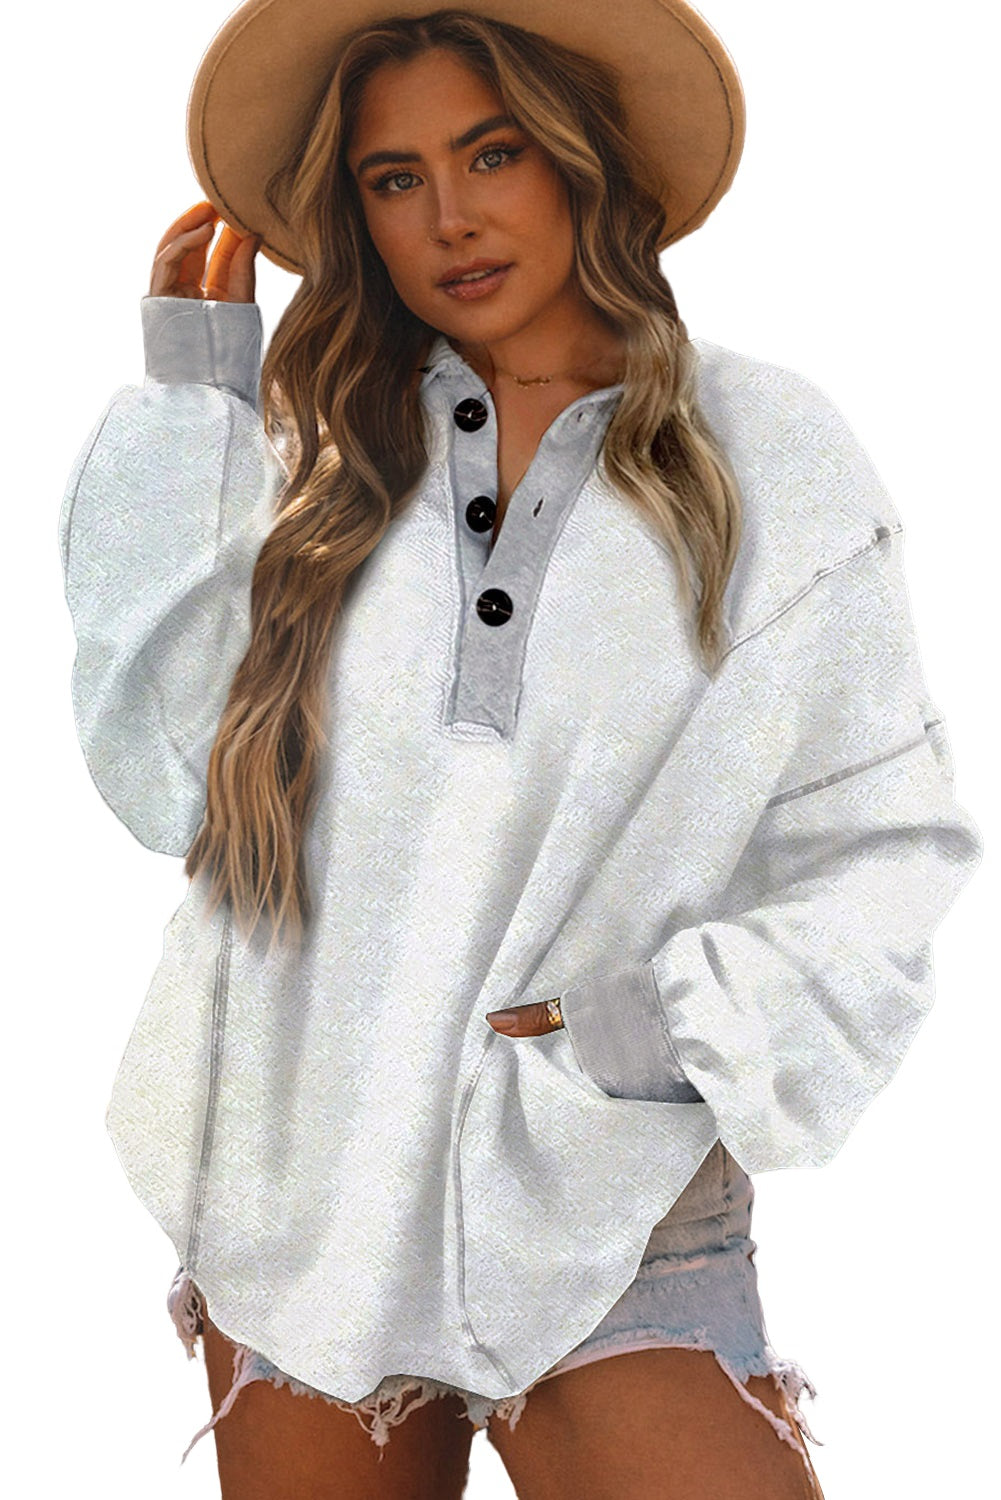 Weißes, strukturiertes Sweatshirt mit seitlichen Taschen und geknöpftem Ausschnitt